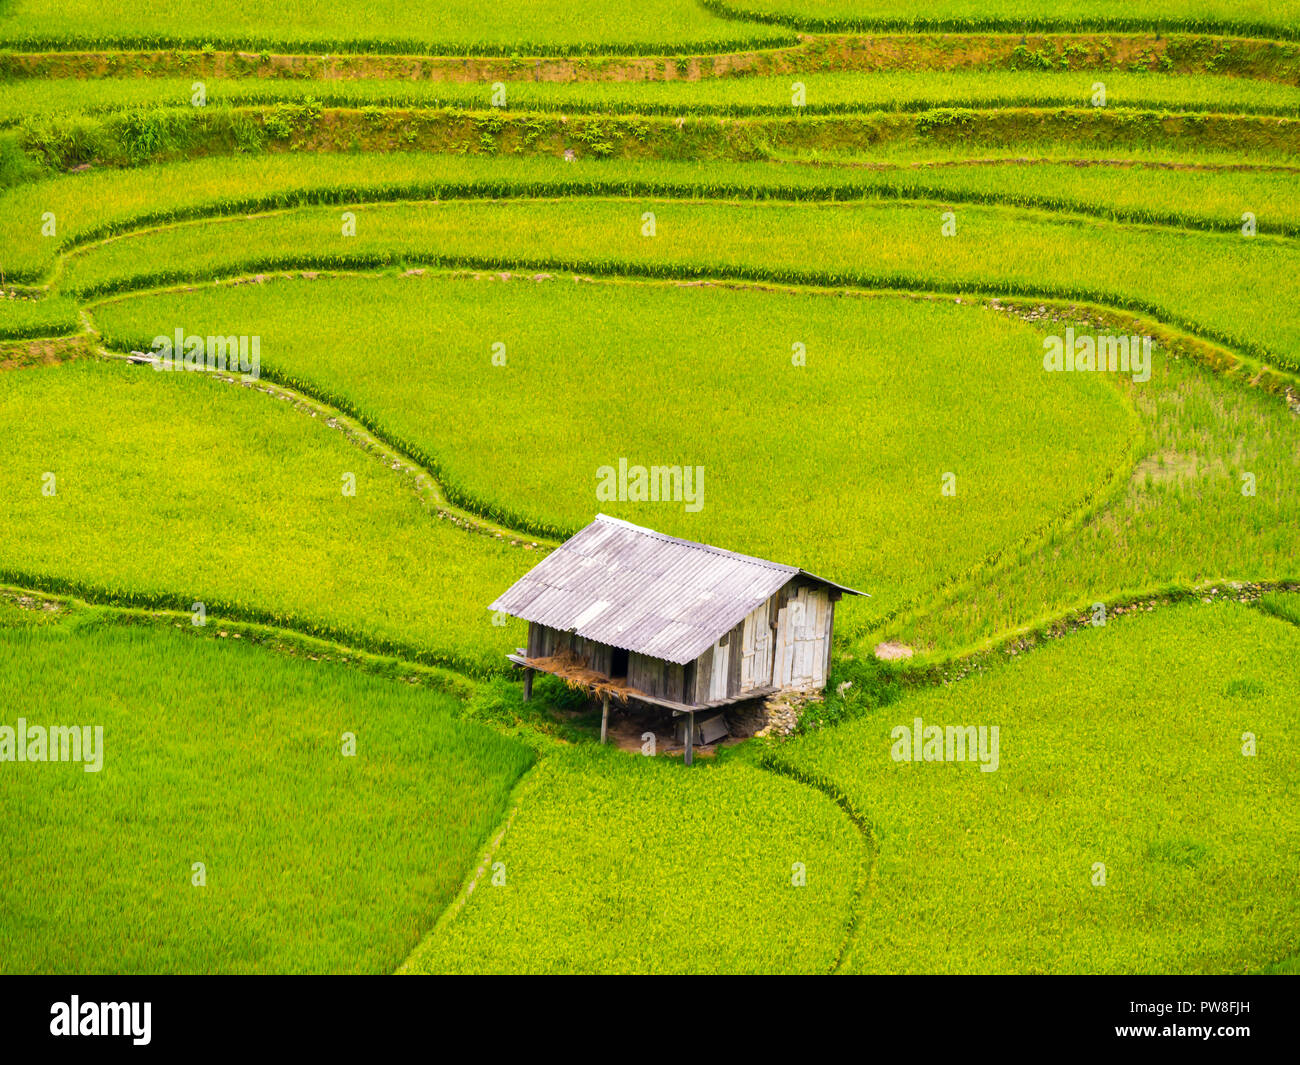 Vue imprenable de cabane ferme entourée de rizières en terrasses, Mu Cang Chai, Nord du Vietnam Banque D'Images